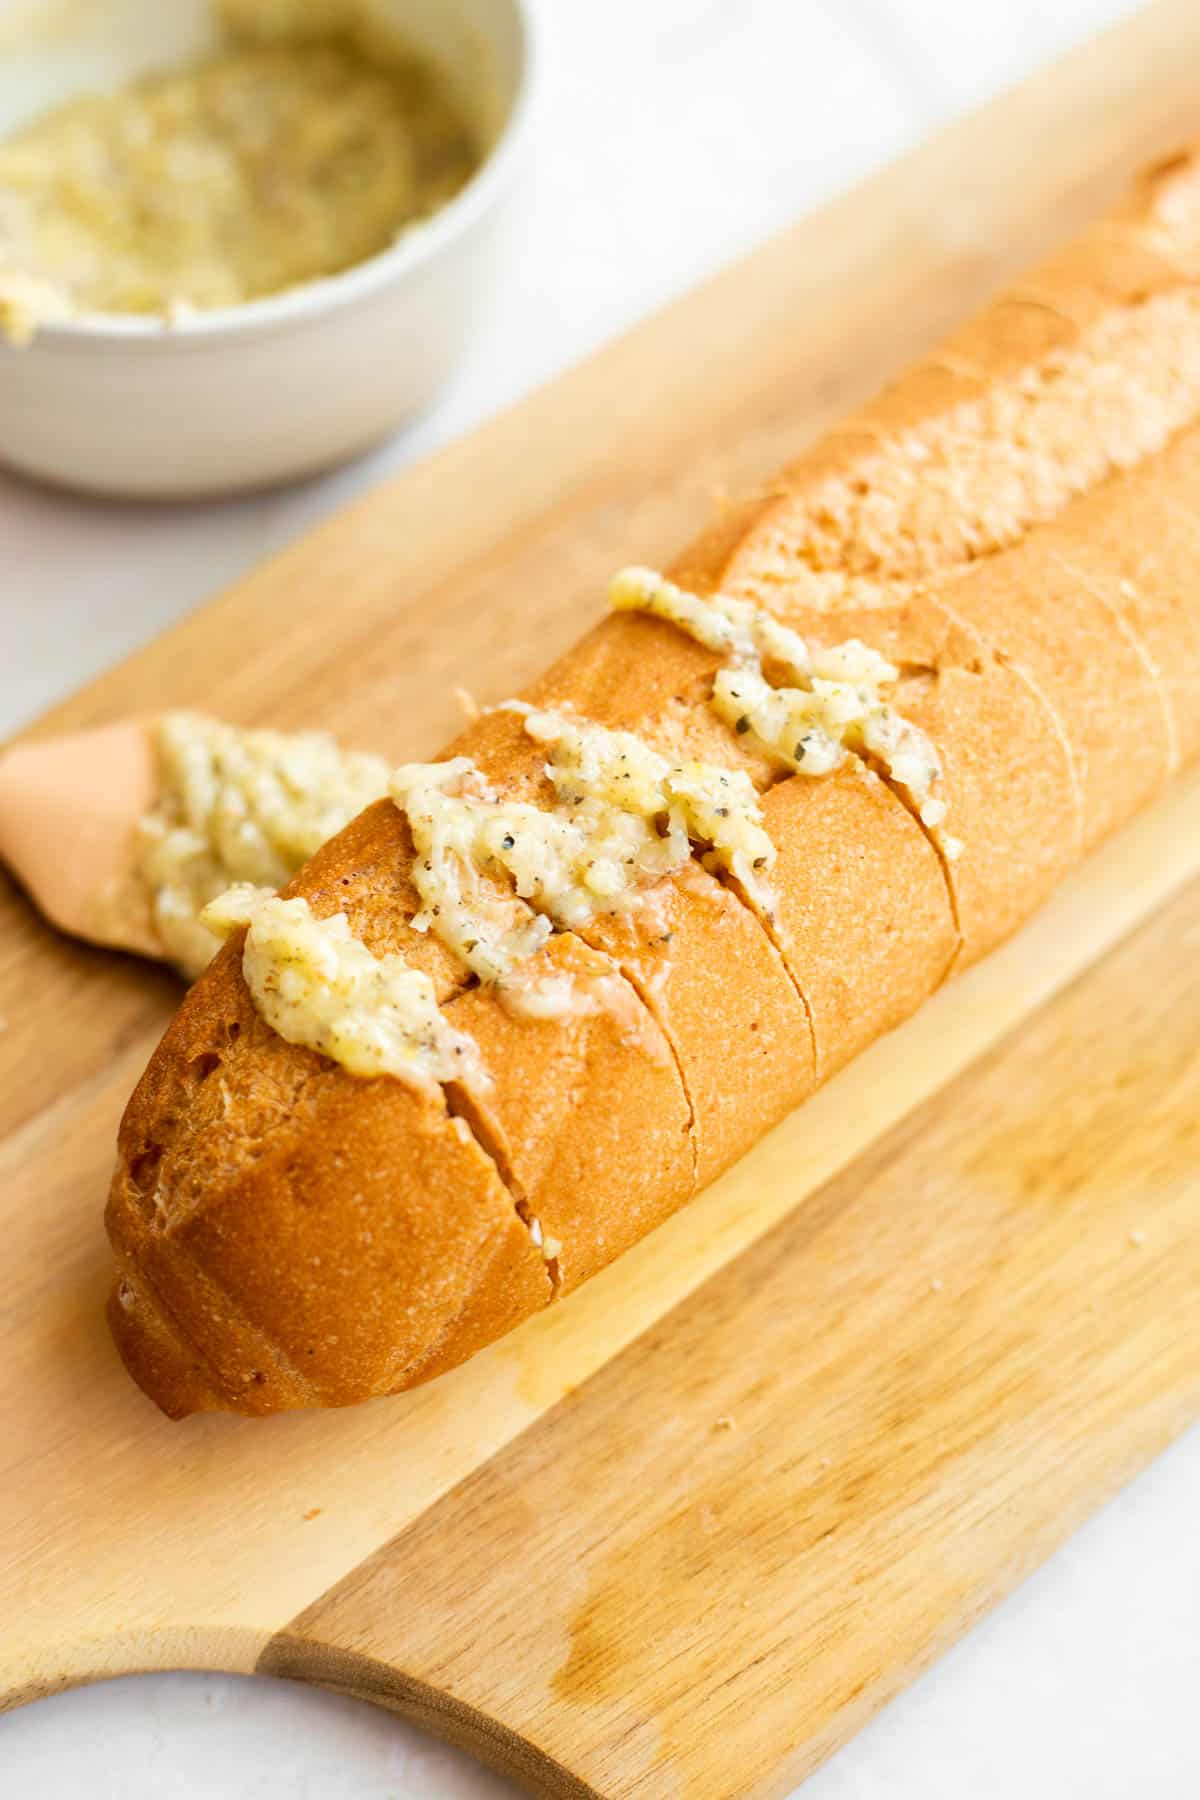 garlic butter spread in between slices of bread.